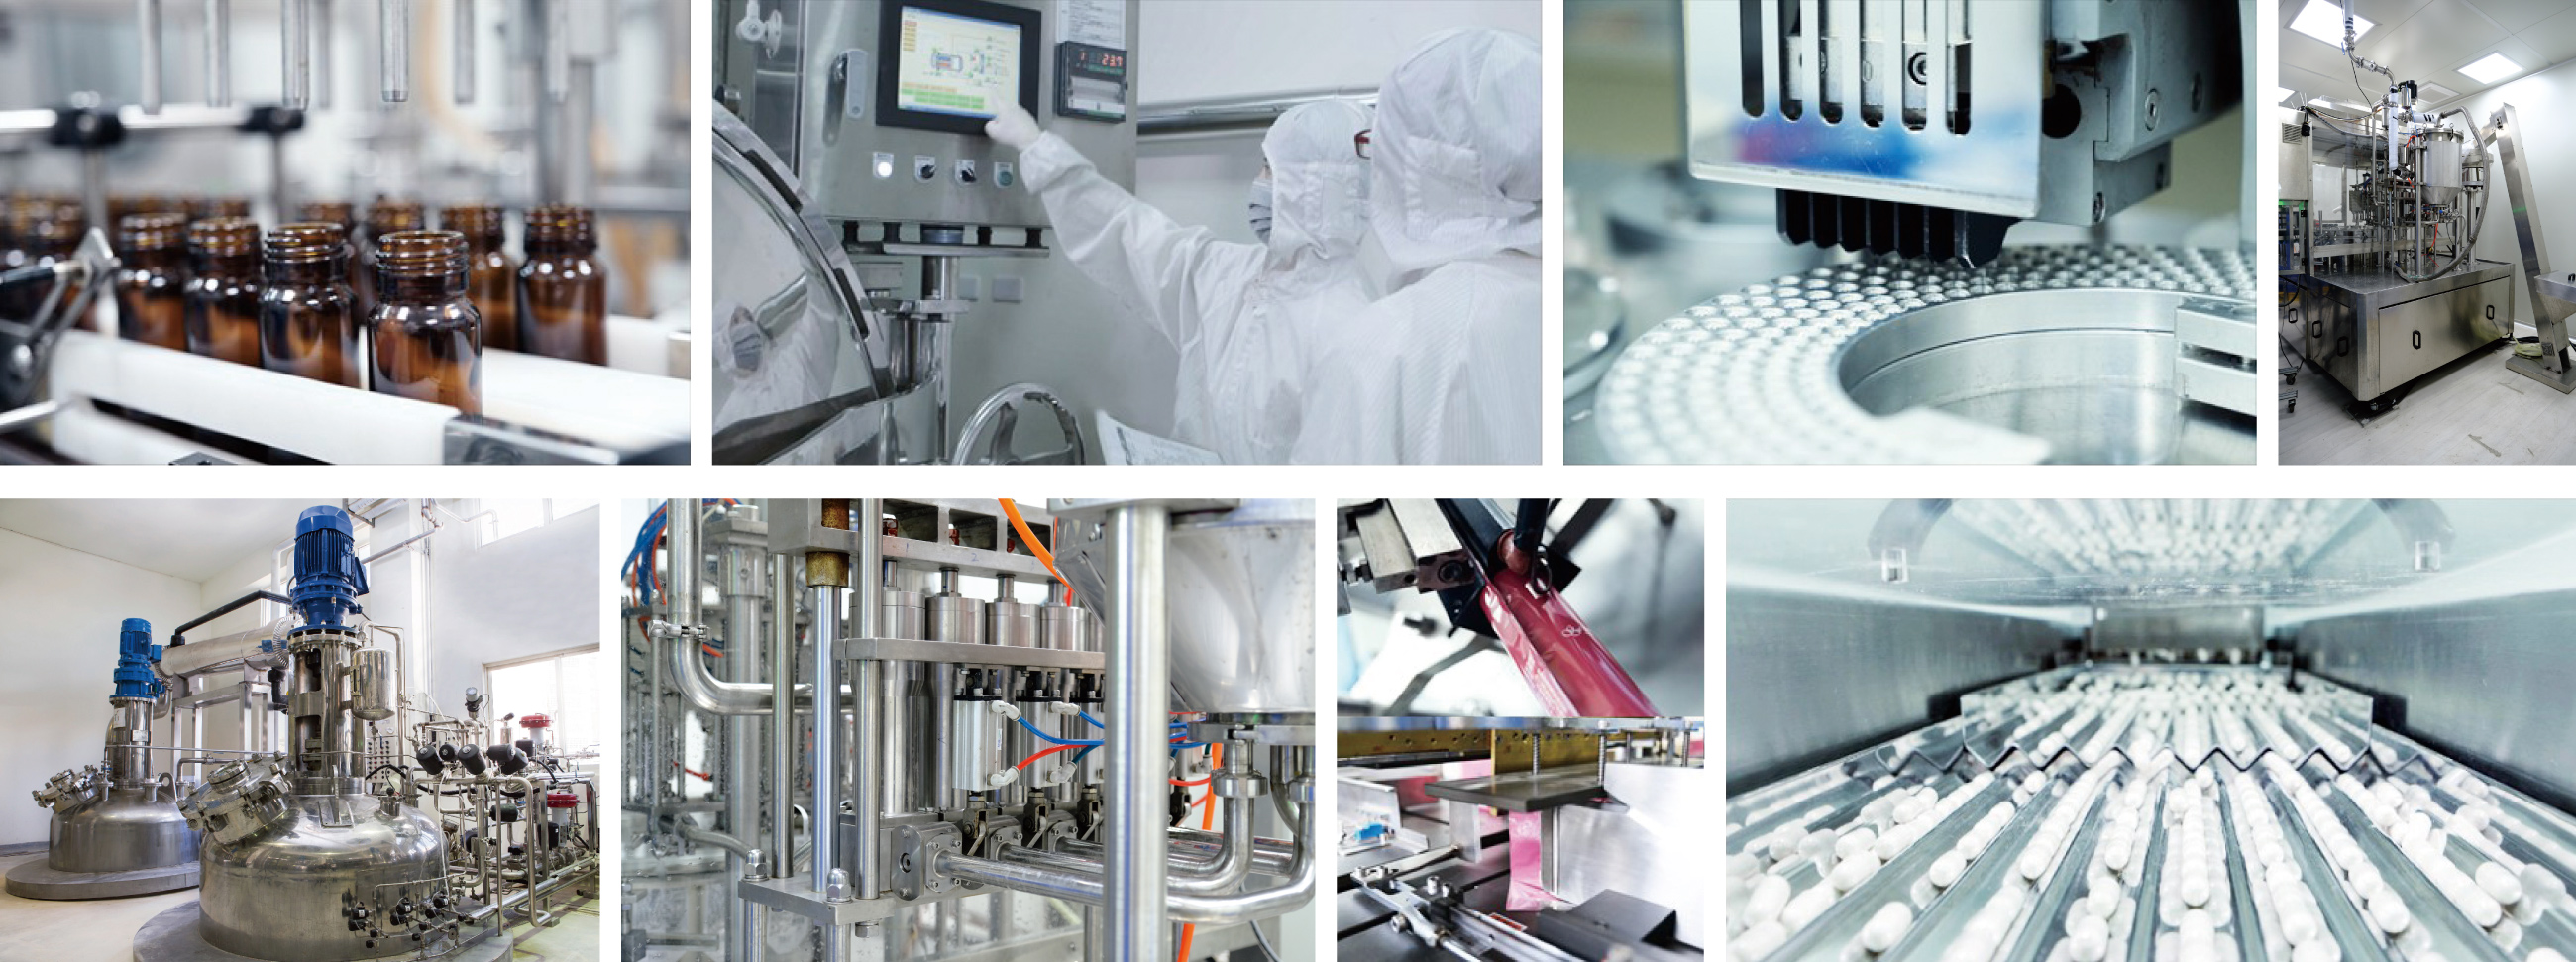 長利奈米保健食品代工廠生產設備採全程電腦自動化控制，擁有百噸以上的專業發酵及萃取生產設備